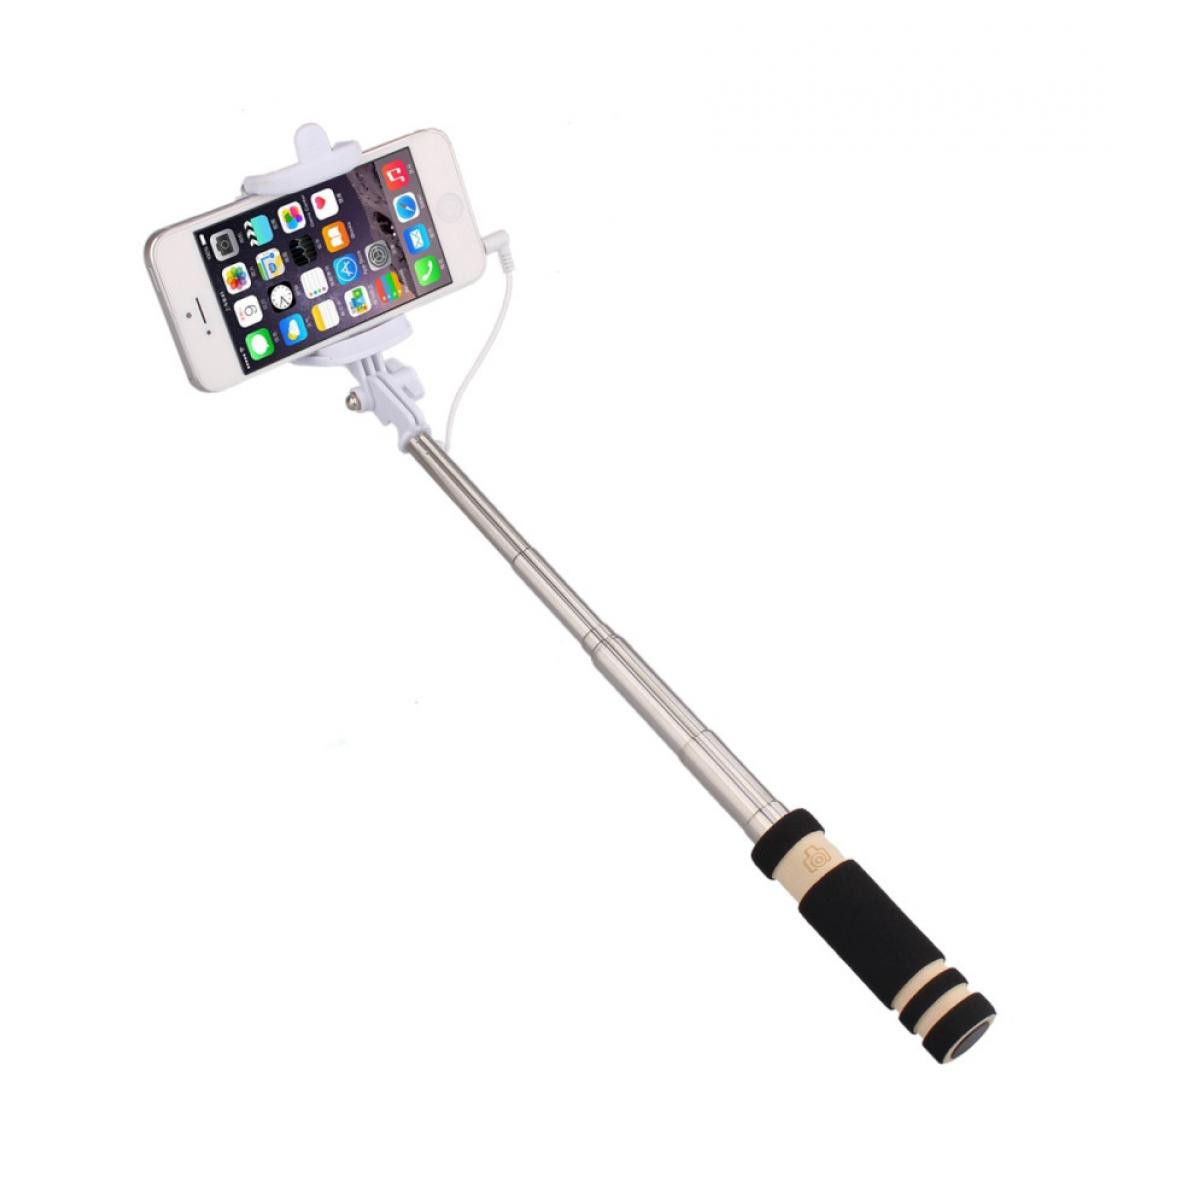 Shot - Mini Perche Selfie pour OPPO Reno Z Smartphone avec Cable Jack Selfie Stick Android IOS Reglable Bouton Photo (NOIR) - Autres accessoires smartphone